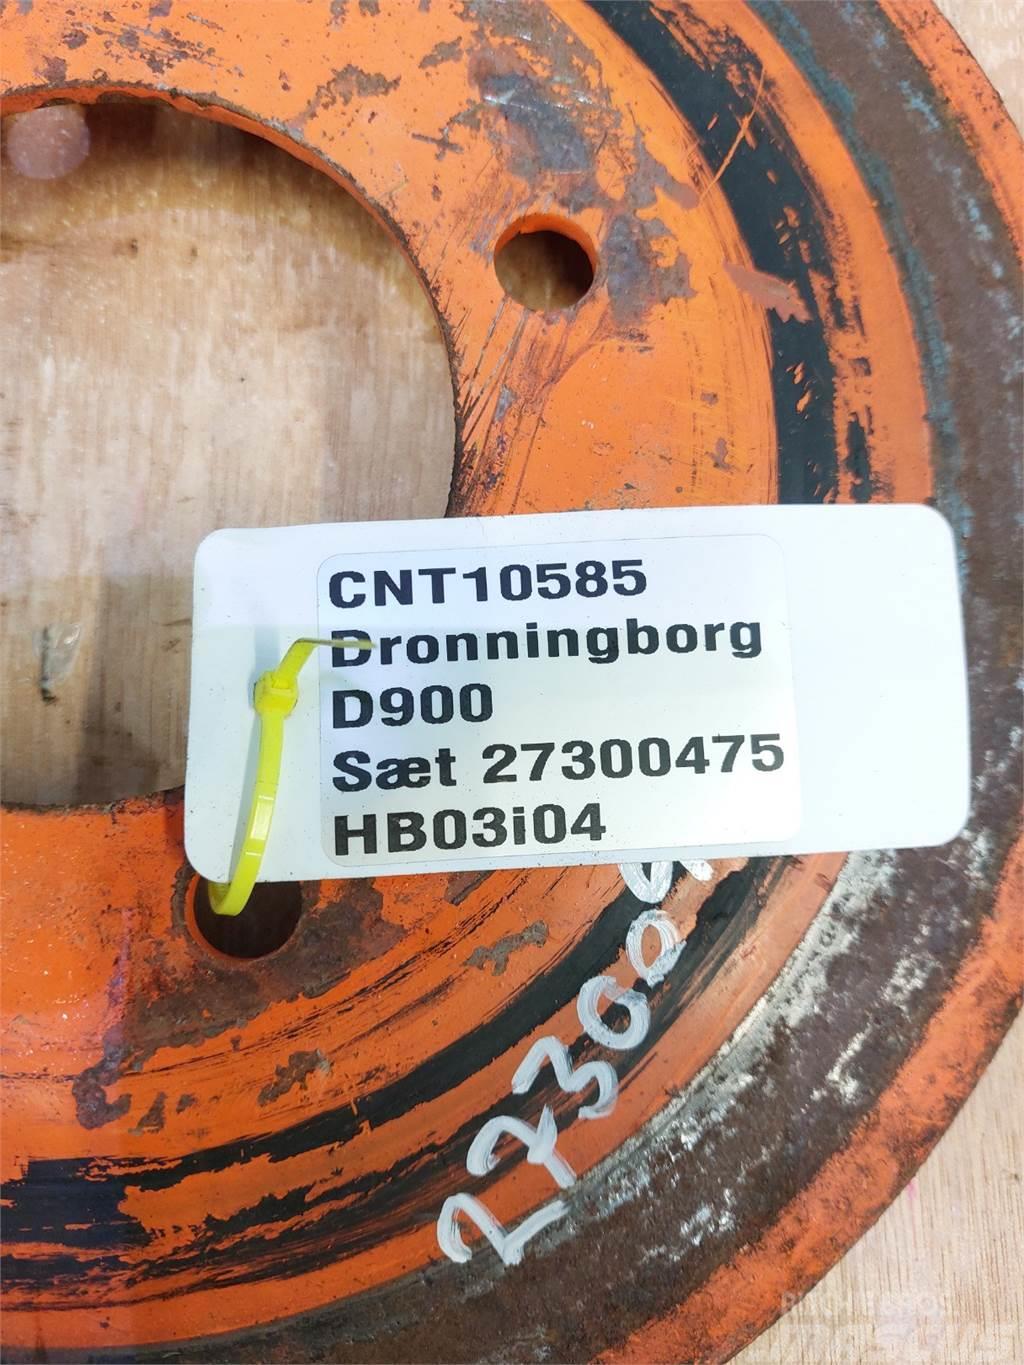 Dronningborg D900 Άλλα γεωργικά μηχανήματα